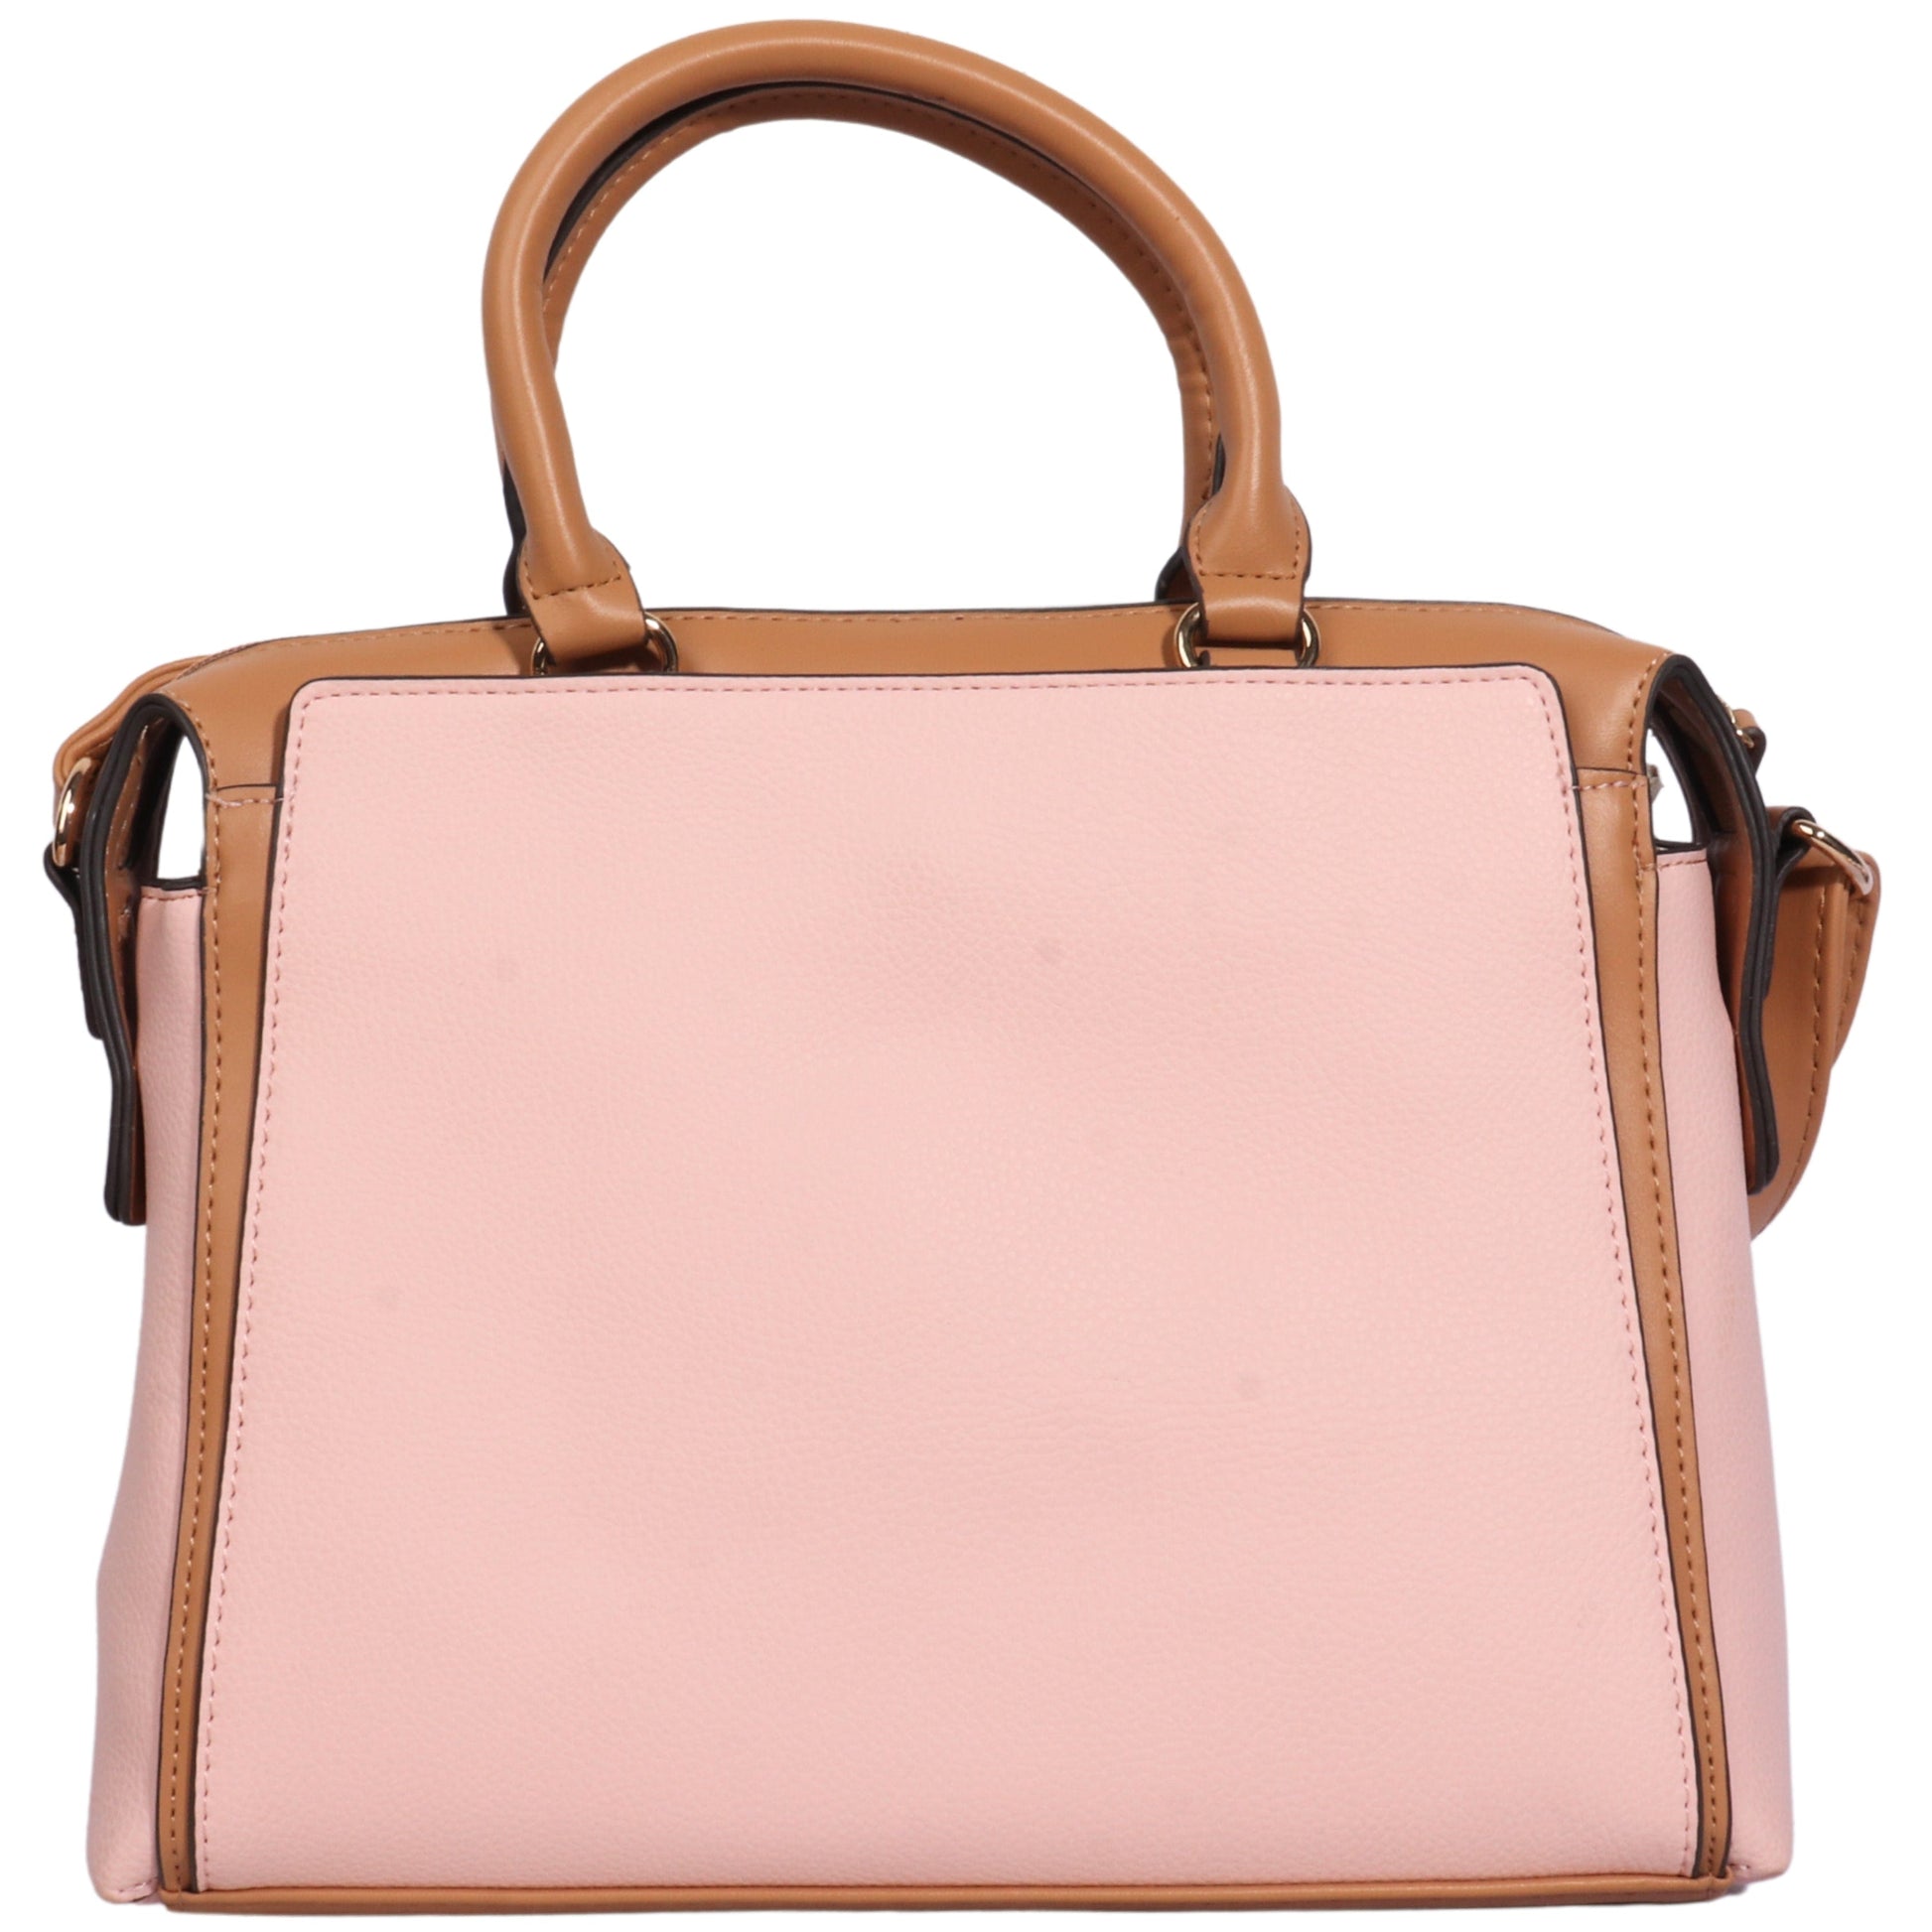 BRANDS & BEYOND Women Bags Multi-Color Women's Faux Leather Handbag